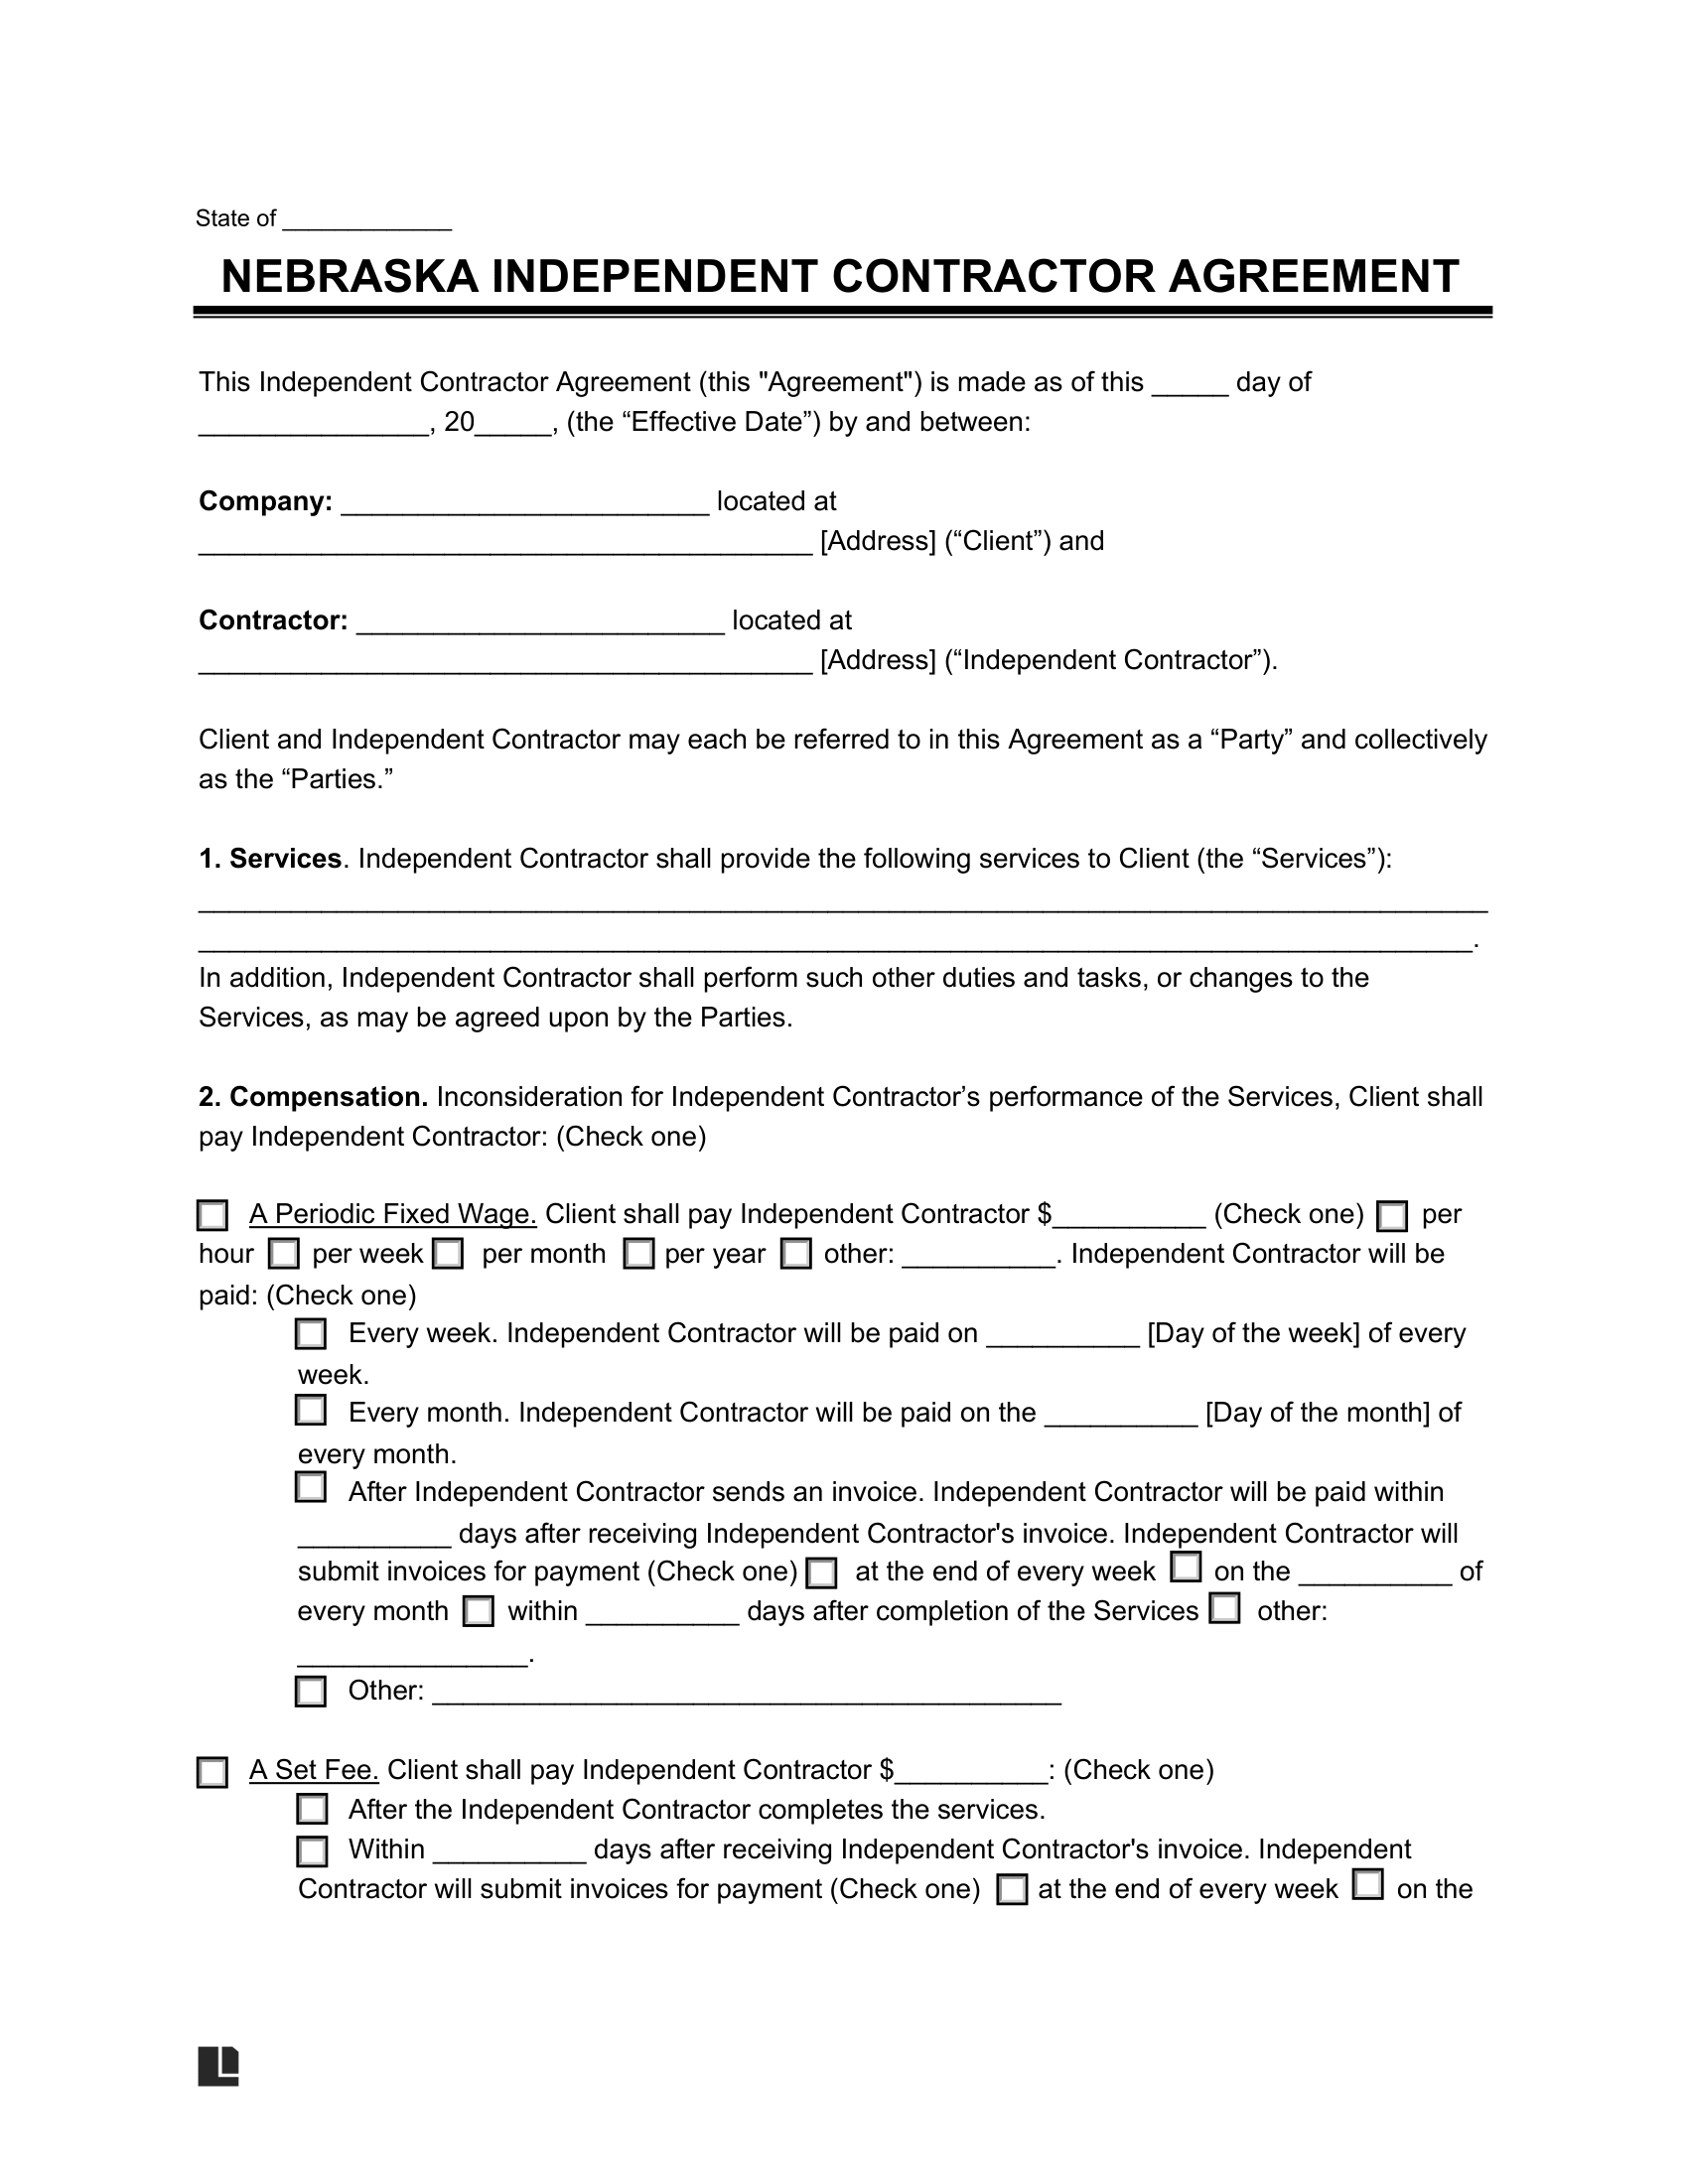 Nebraska Independent Contractor Agreement